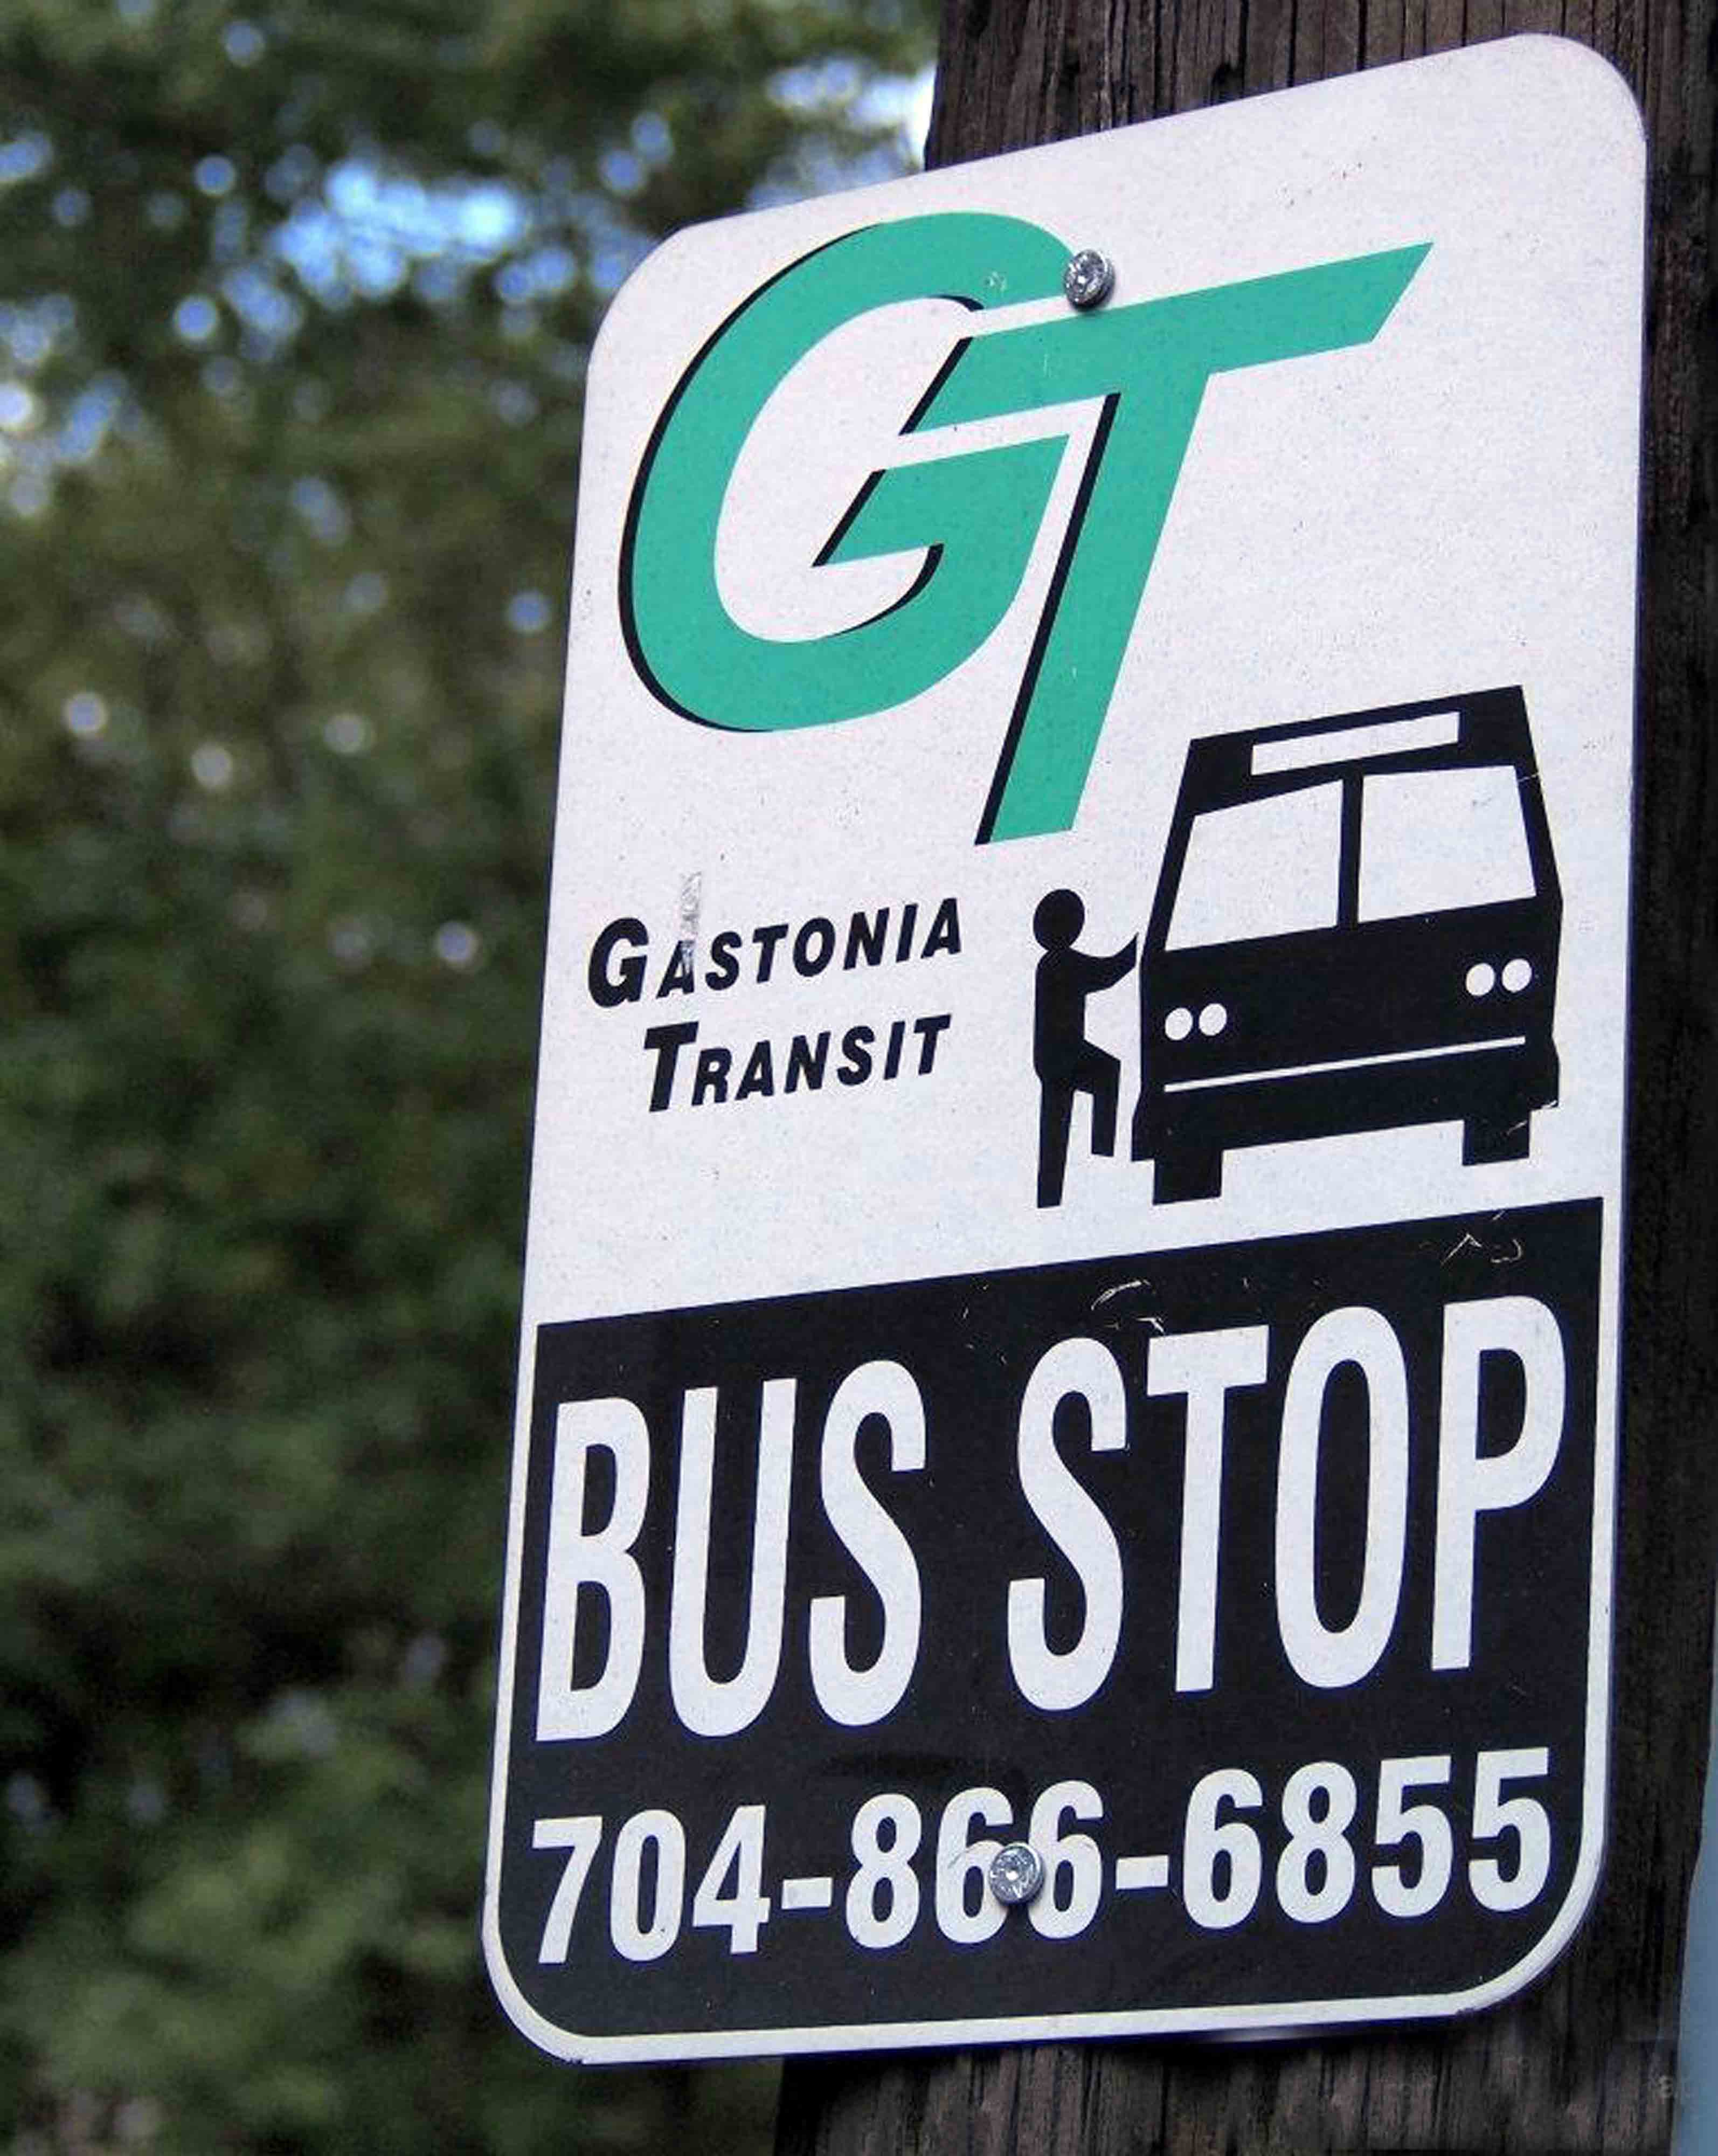 Transit bus stop sign 2013